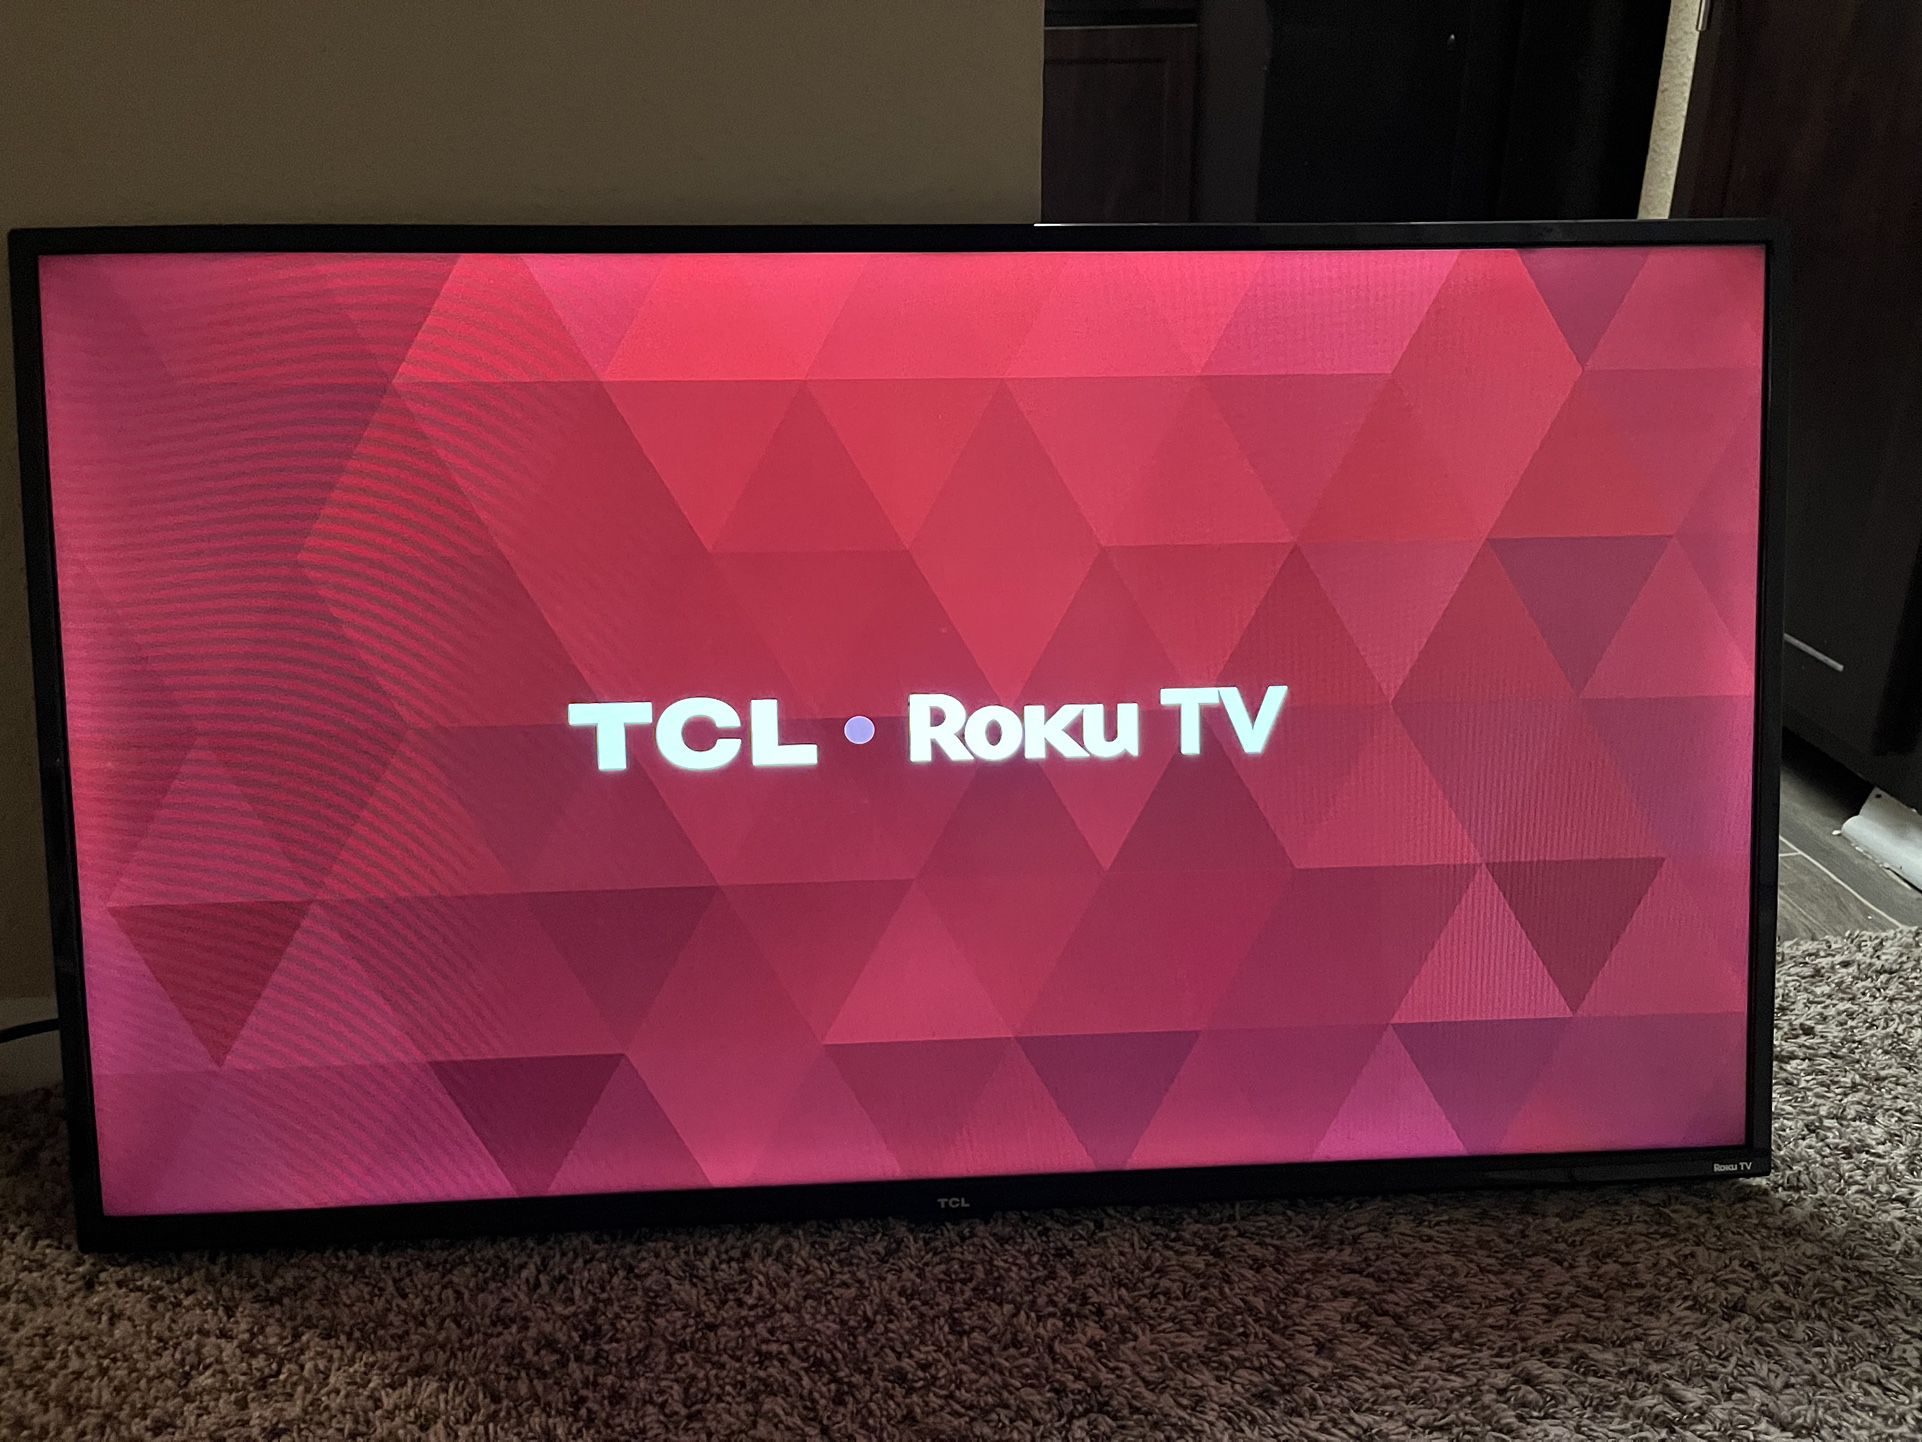 TCL ROKU TV